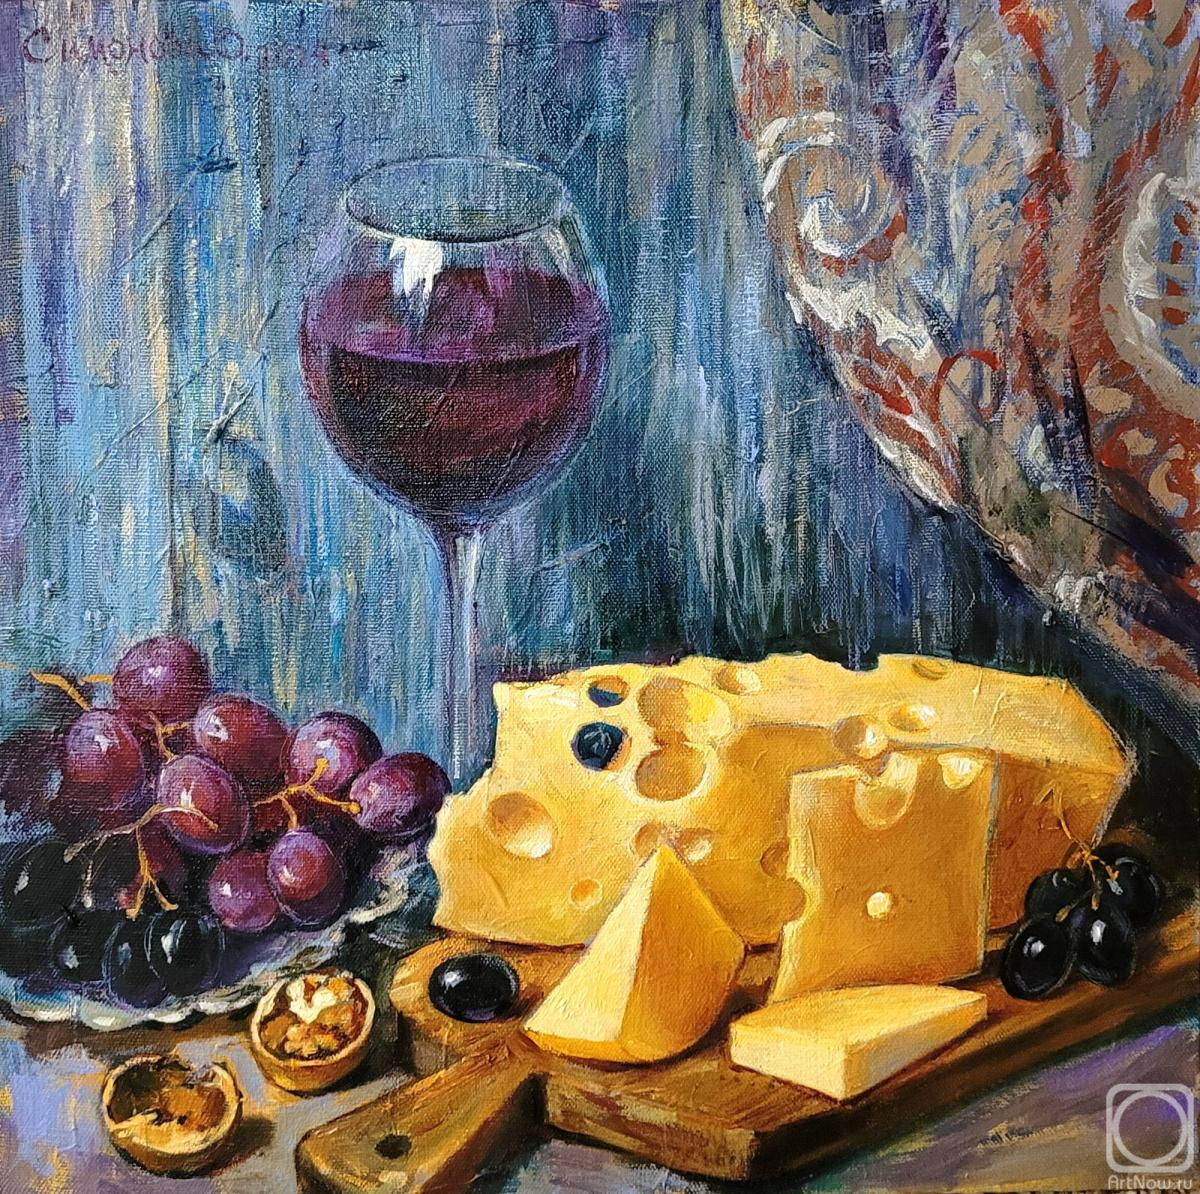 Simonova Olga. Cheese and wine